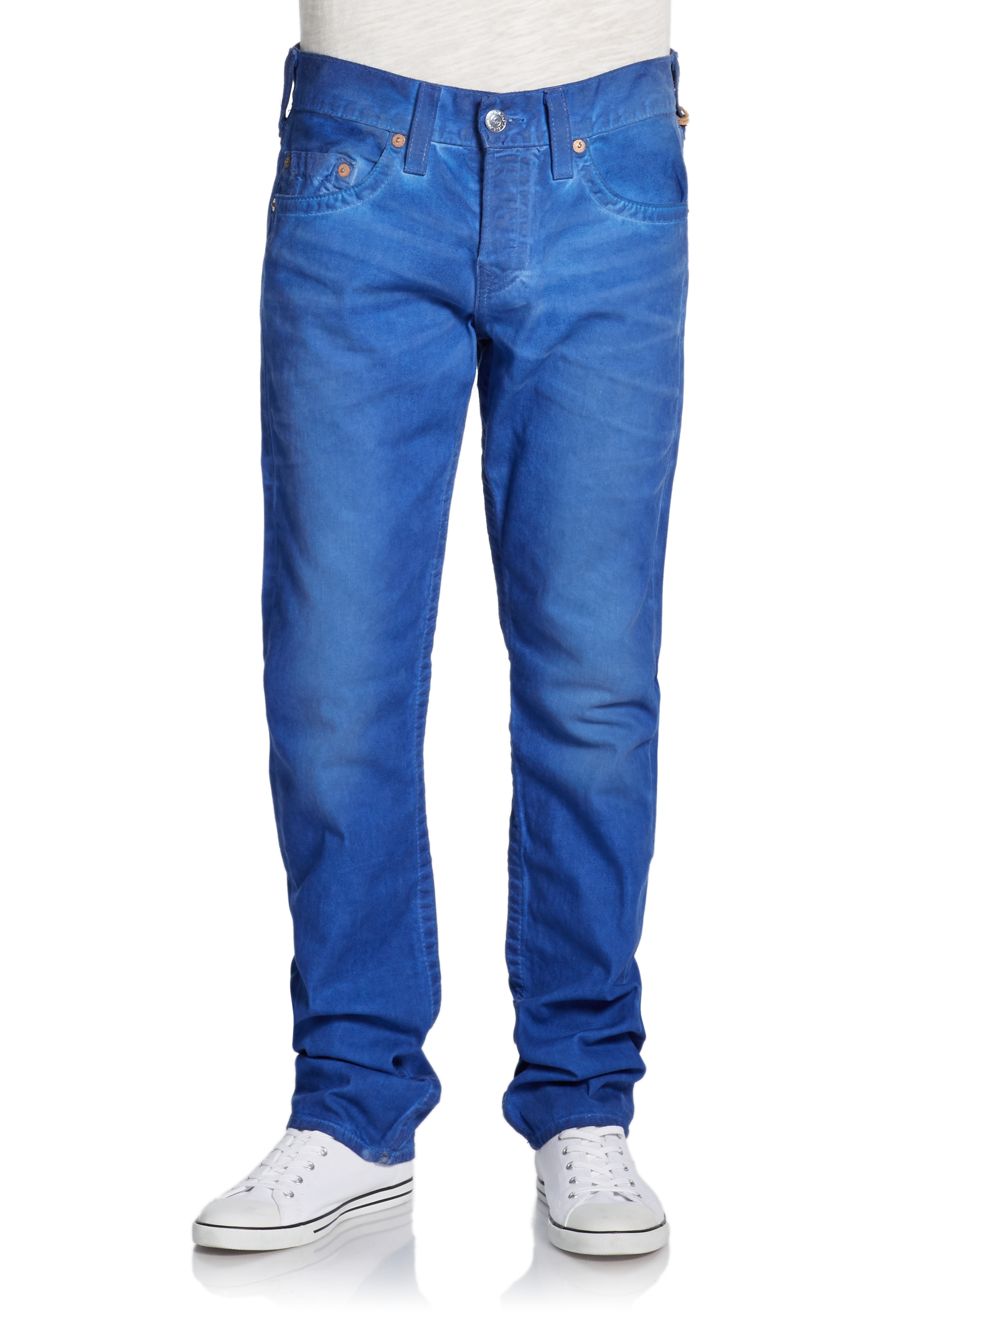 True Religion Geno Slimleg Jeans in Blue for Men - Lyst